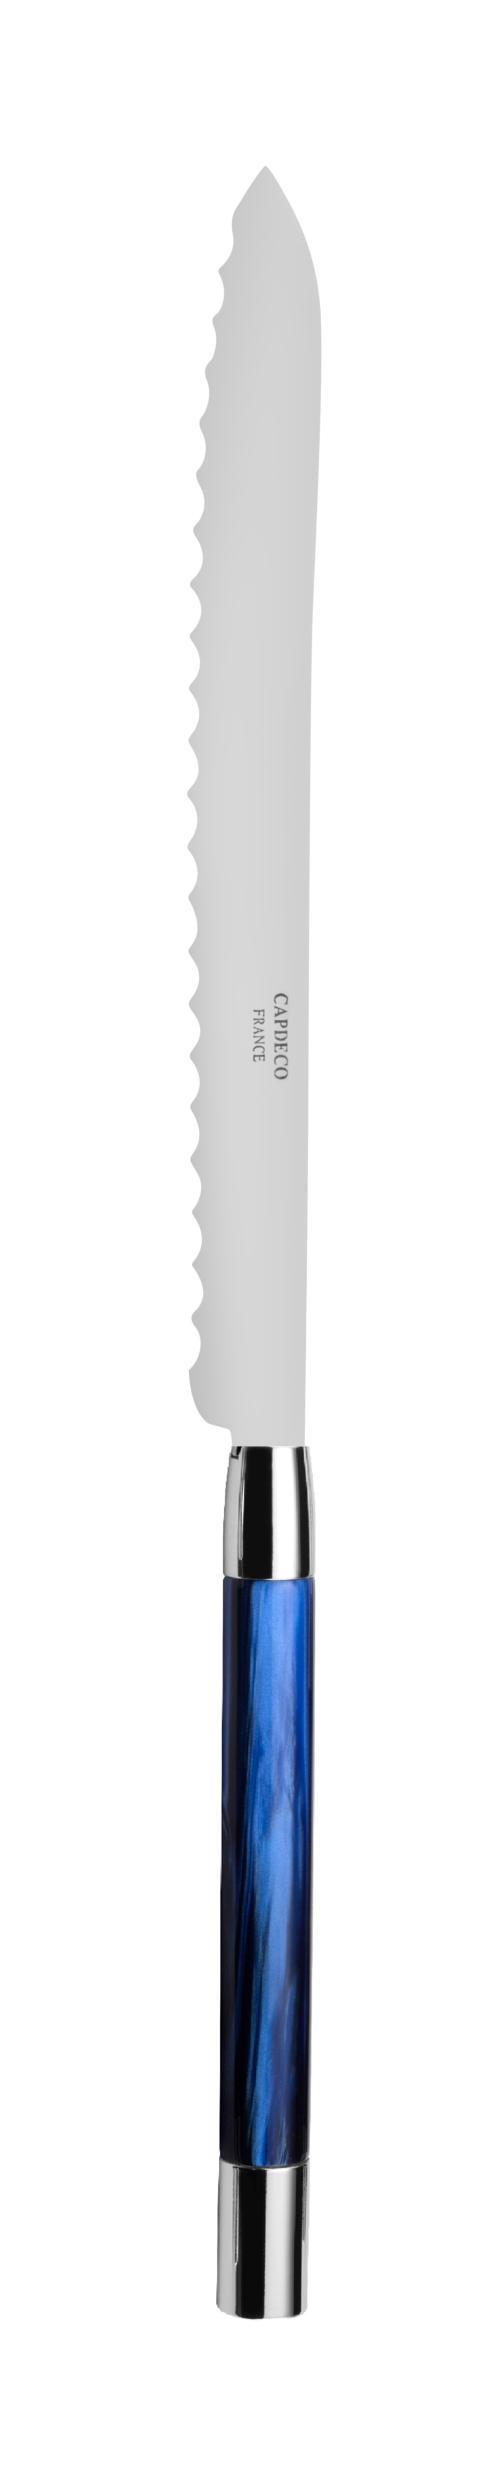 Bread knife - $75.00